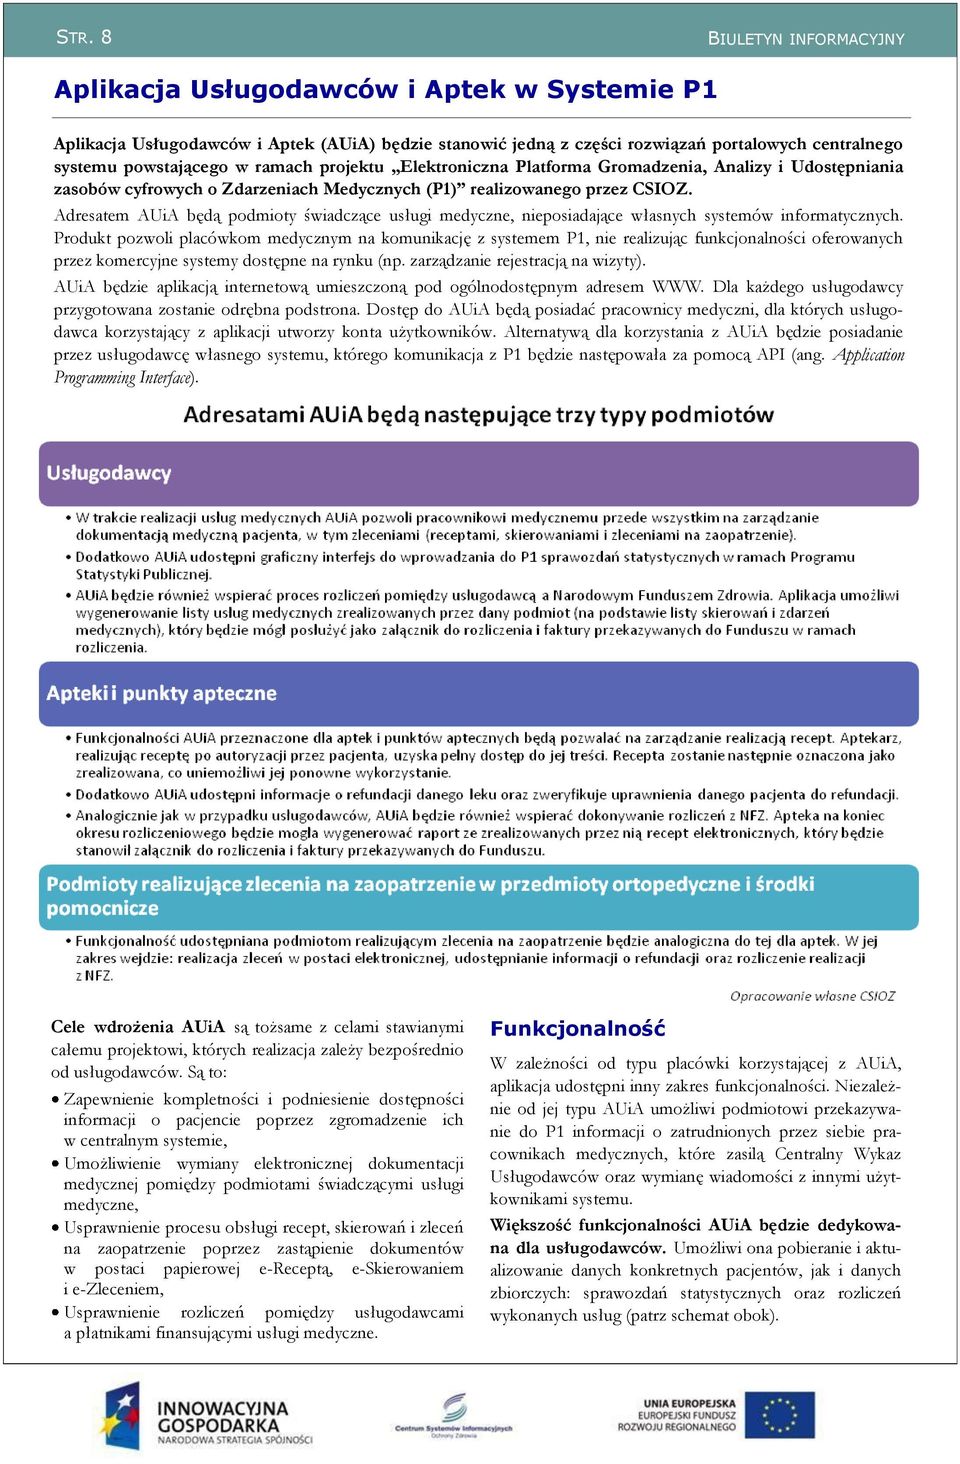 Adresatem AUiA będą podmioty świadczące usługi medyczne, nieposiadające własnych systemów informatycznych.